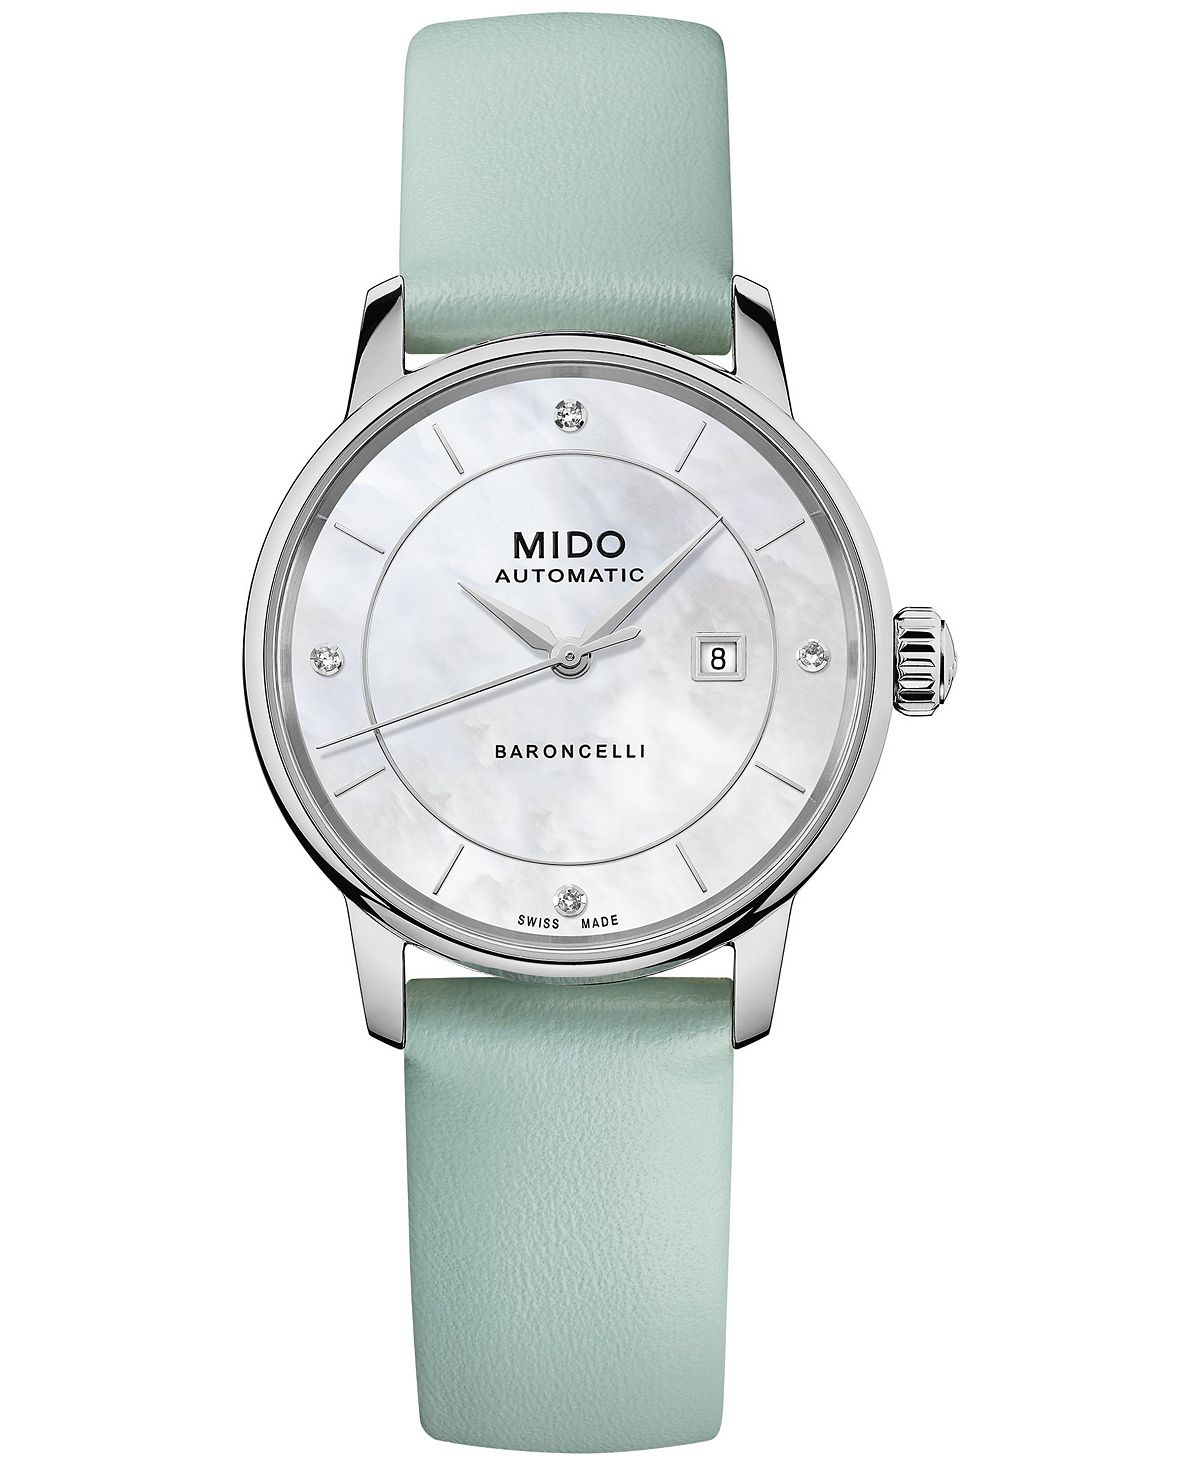 Женские швейцарские автоматические часы Baroncelli Diamond Accent со сменным кожаным ремешком, подарочный набор 30 мм Mido цена и фото